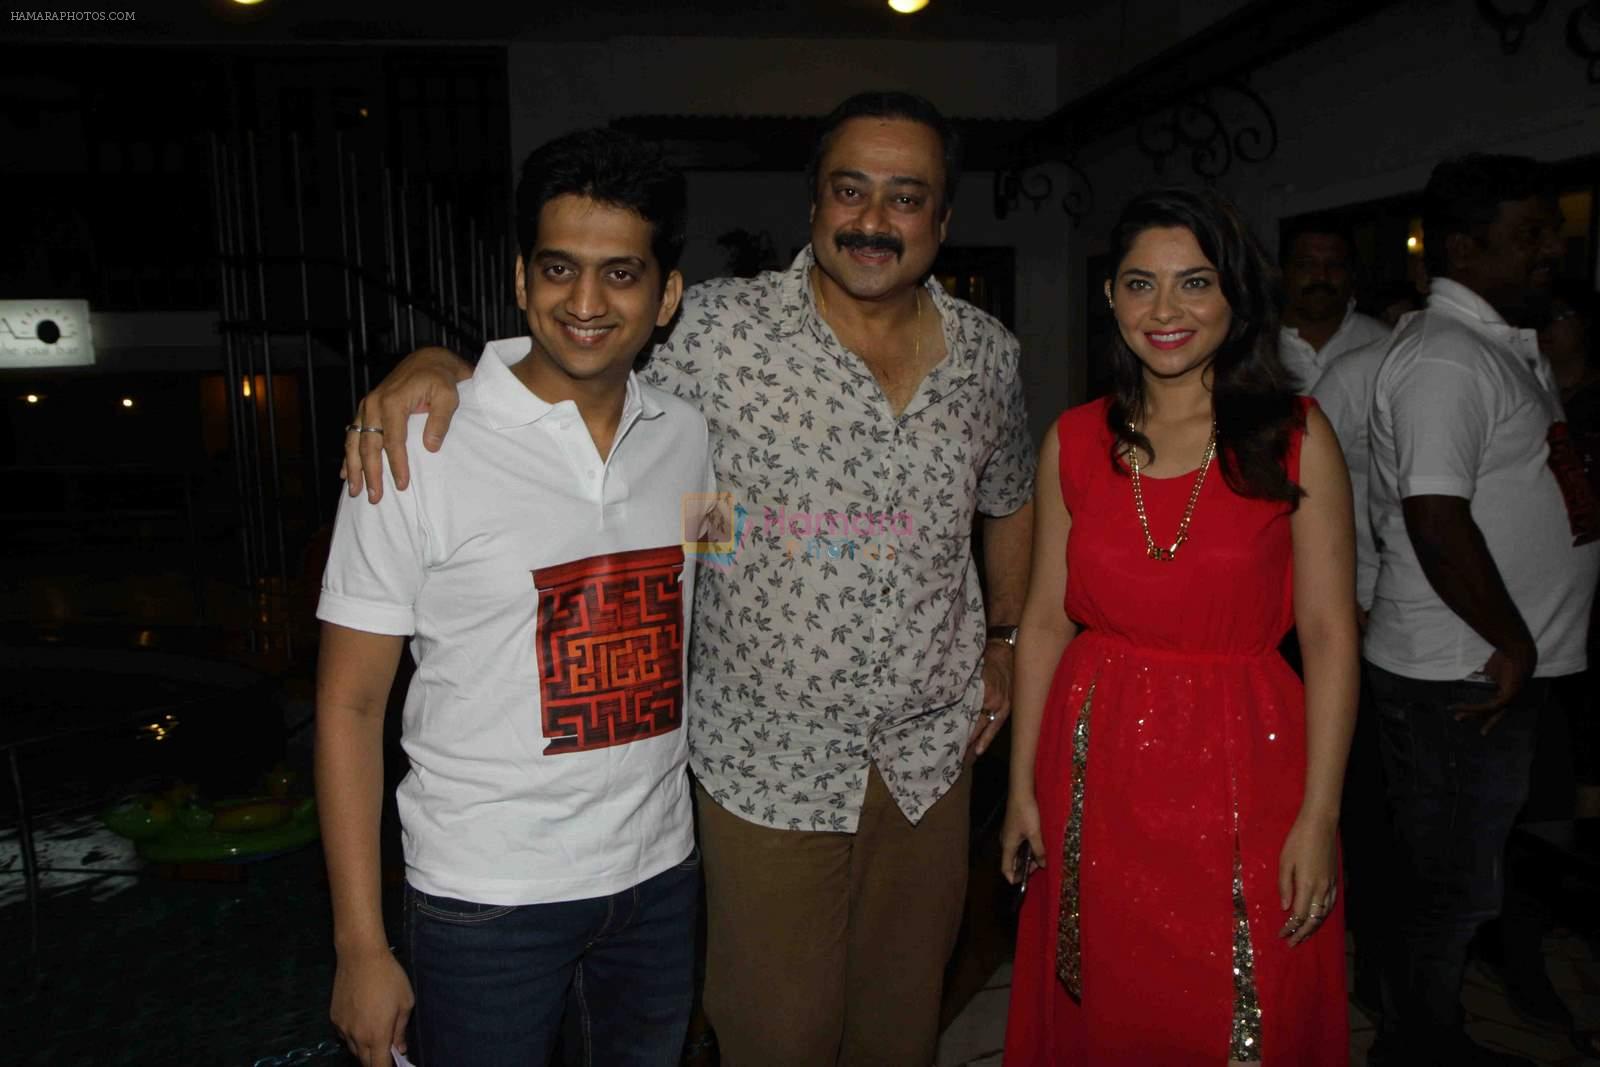 Sonalee Kulkarni, Sachin Khedekar, Amey Wagh at Shutter music launch in Mumbai on 25th June 2015